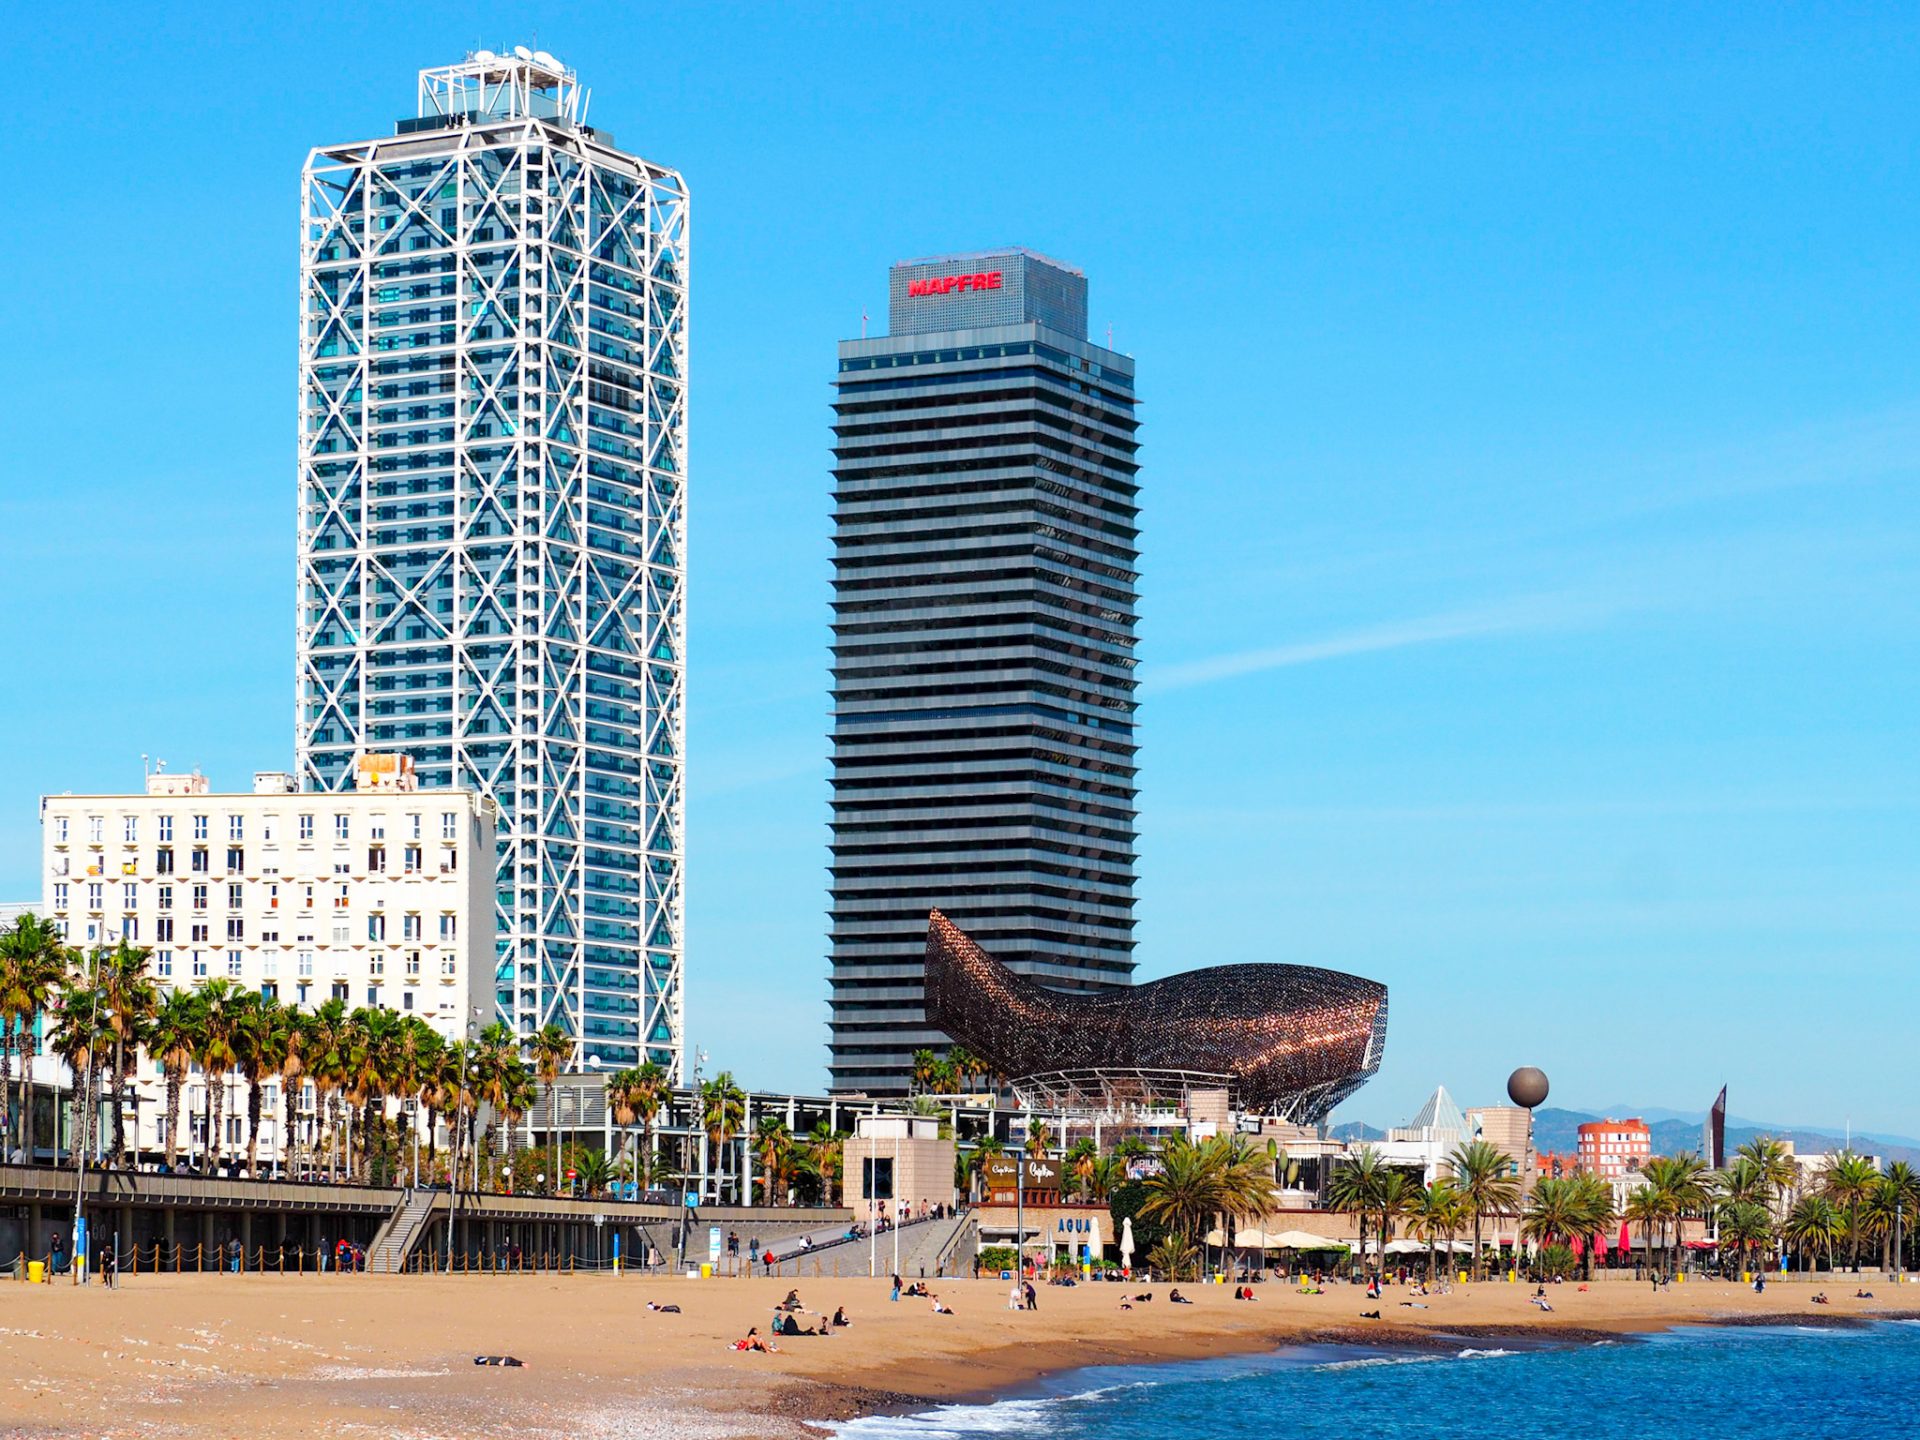 La spiaggia di Barcellona, l'Arts Hotel e la scultura del pesce di Frank Ghery. Barceloneta, Live virtual tour